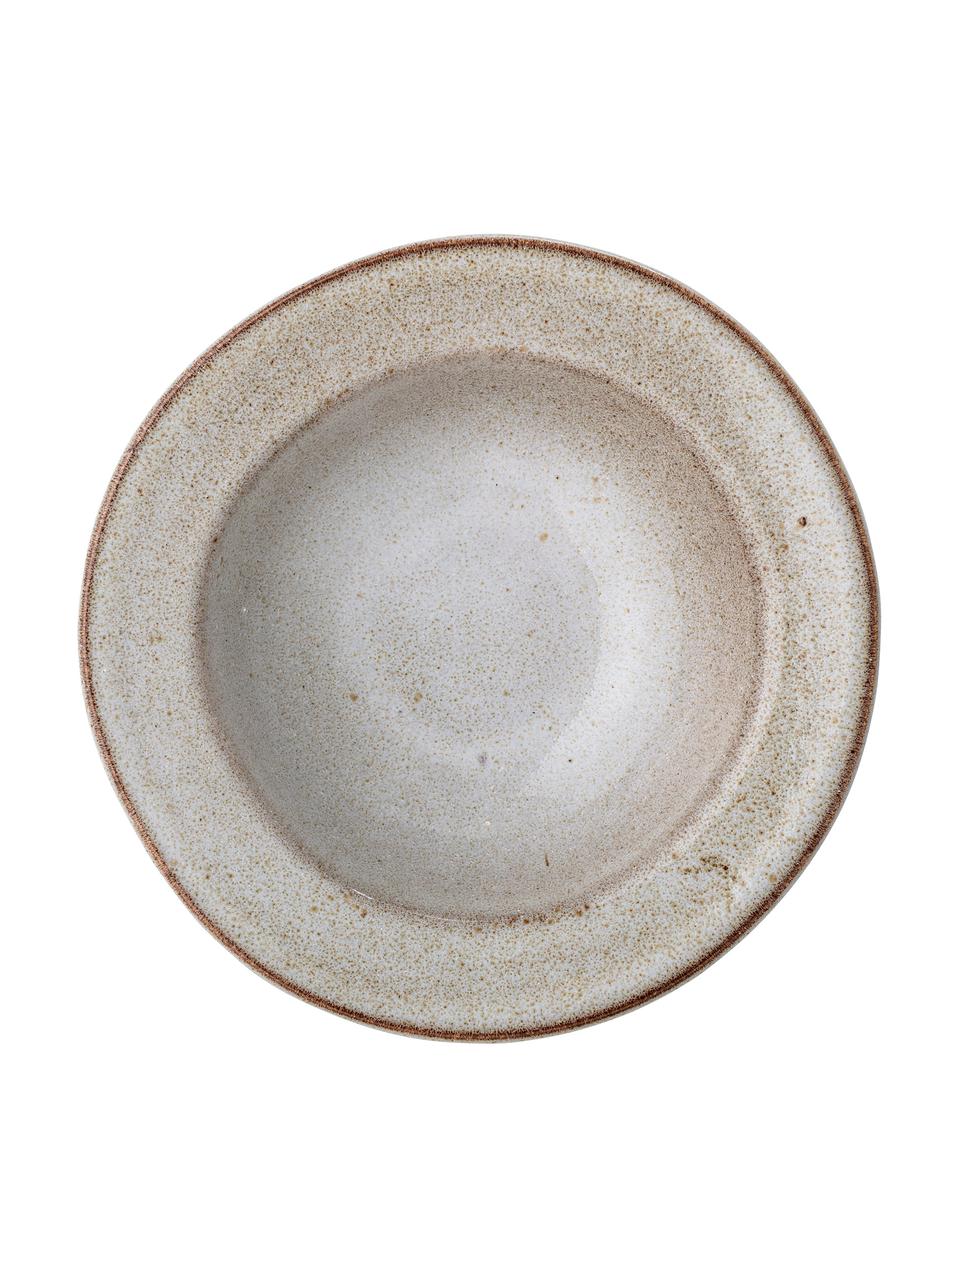 Assiette creuse rustique faite main Sandrine, Grès cérame, Tons beiges, Ø 22 cm